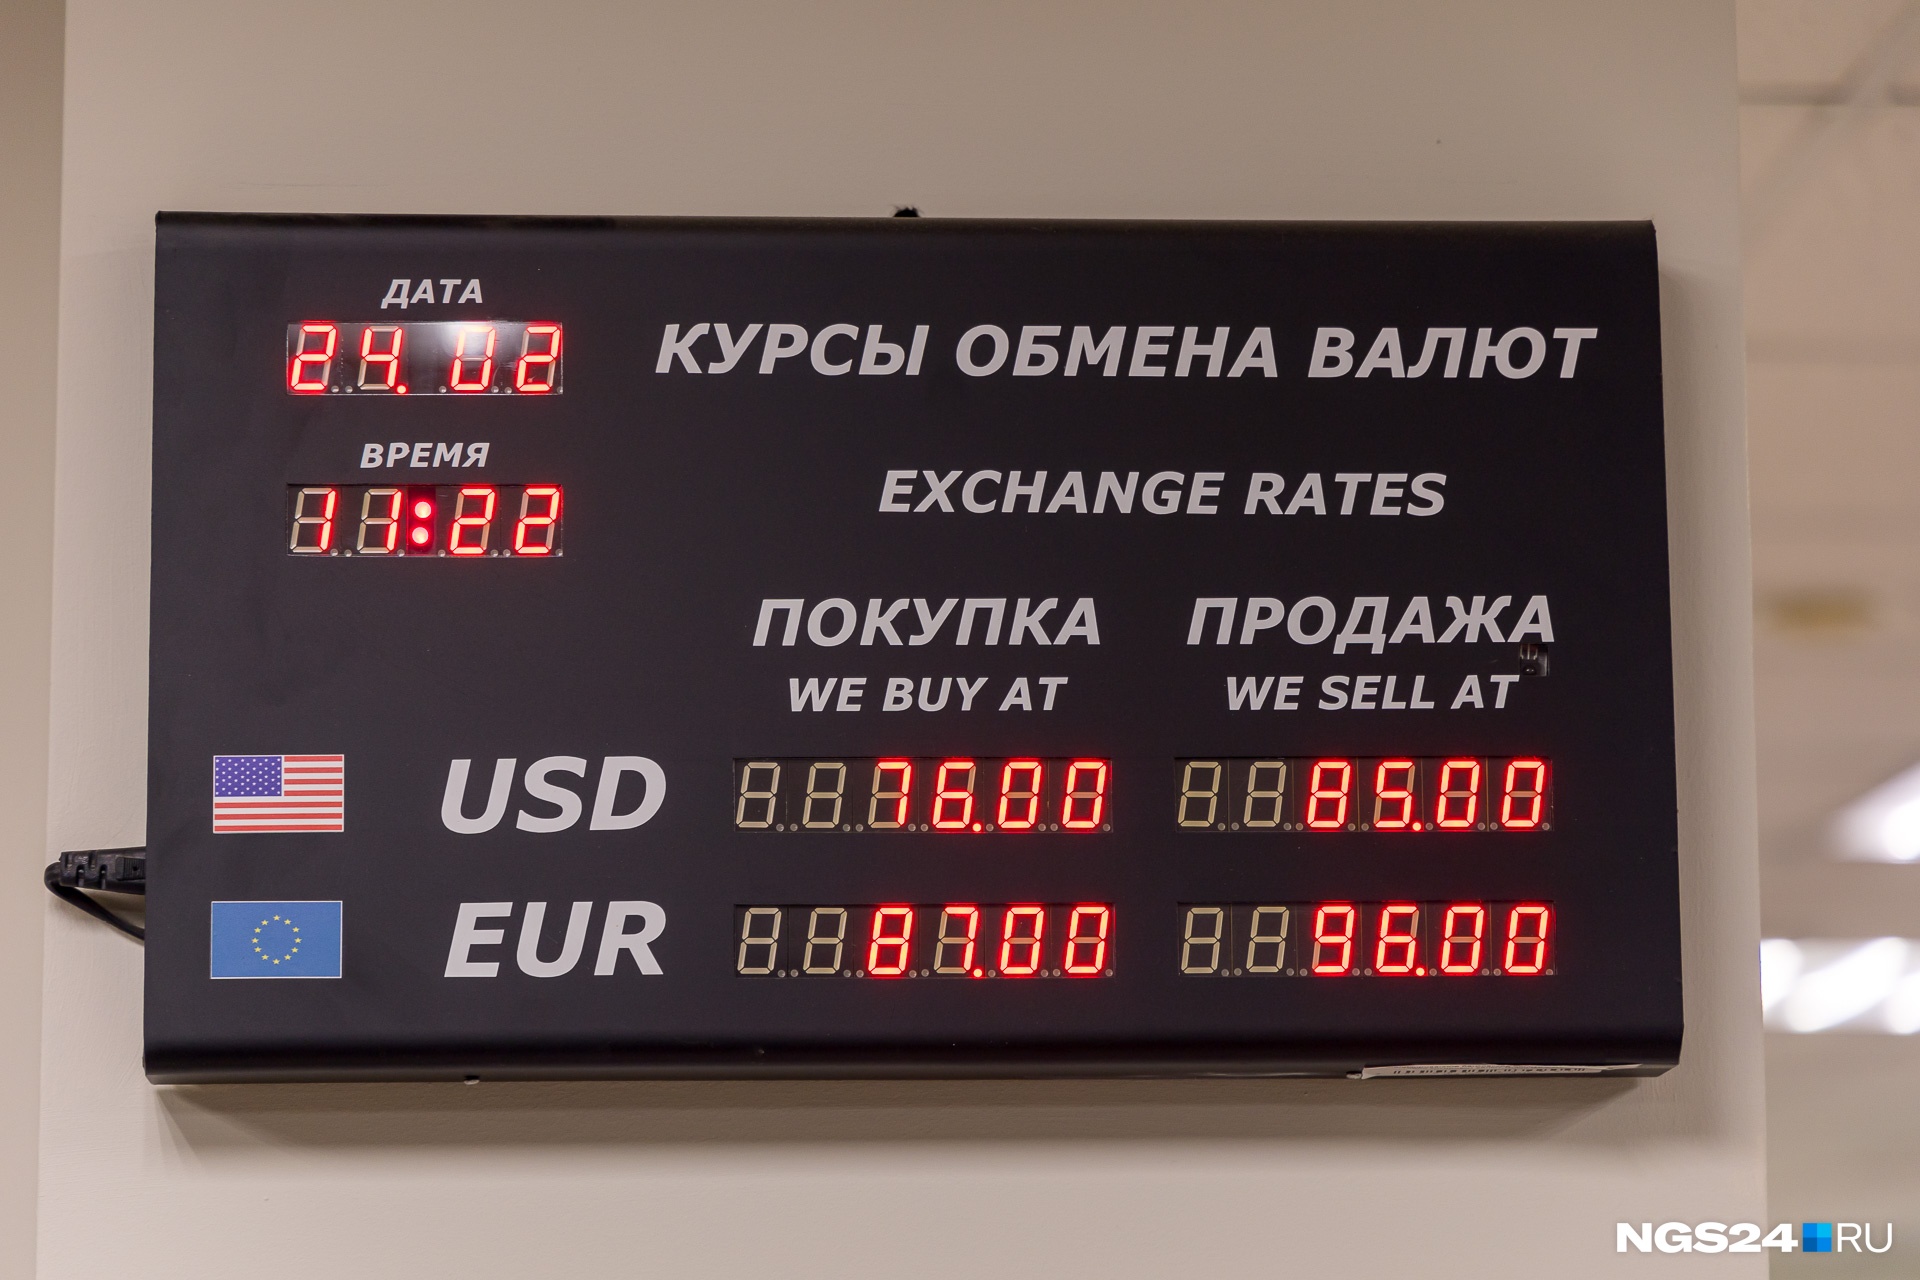 Покупка доллара в банке ульяновска. Обменник валют. Курсы обмена валют. Обменные курсы валют. Размен валюты.